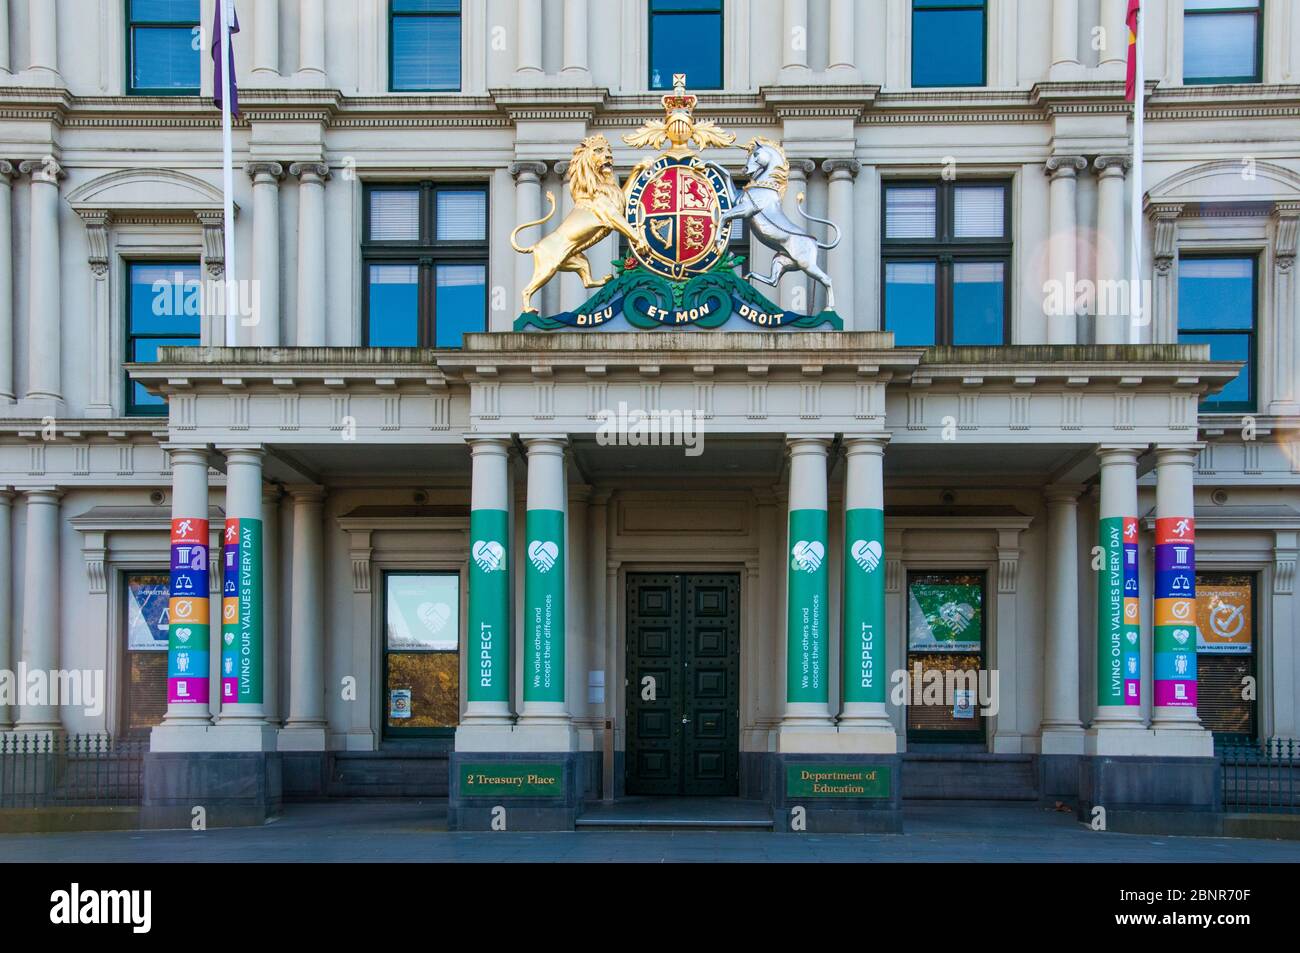 Hauptsitz des State Department of Education, Melbourne, Victoria, Australien. Britisches Wappen über dem Eingang Referenz der Ursprung des Staates Stockfoto